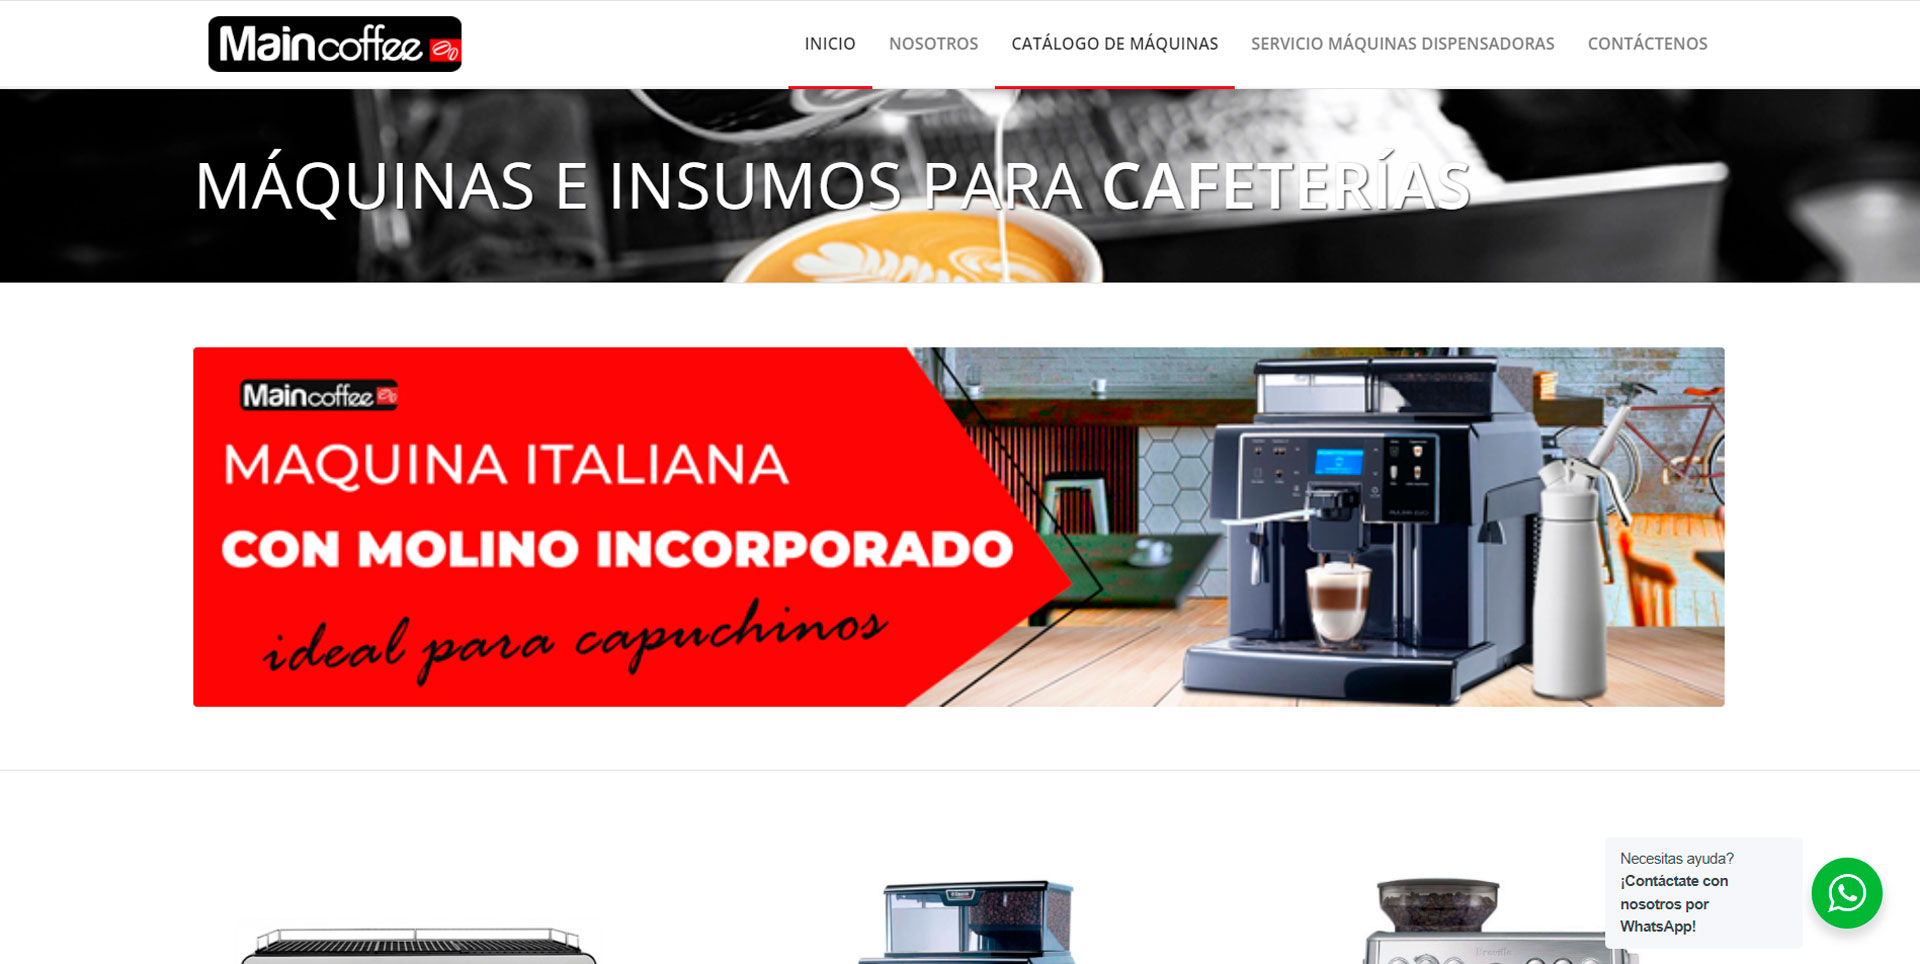 MainCoffee- Maquinas de Café y Servicio Vending